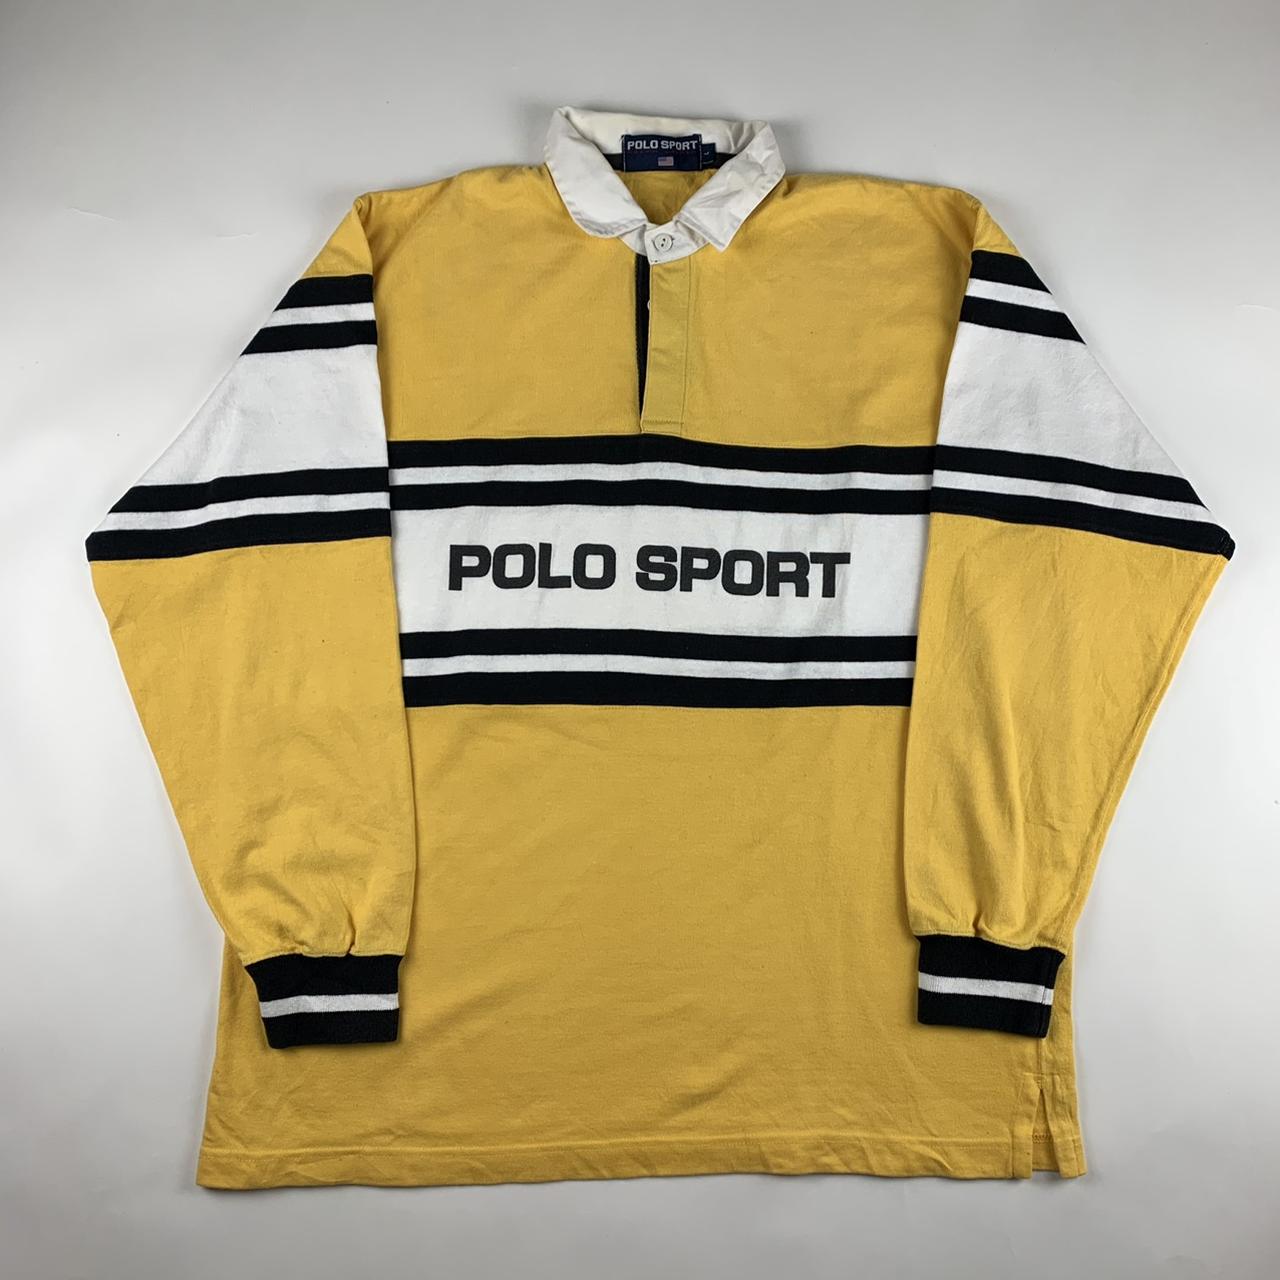 Vintage Polo Sport Jumper -Size Large -10/9... - Depop